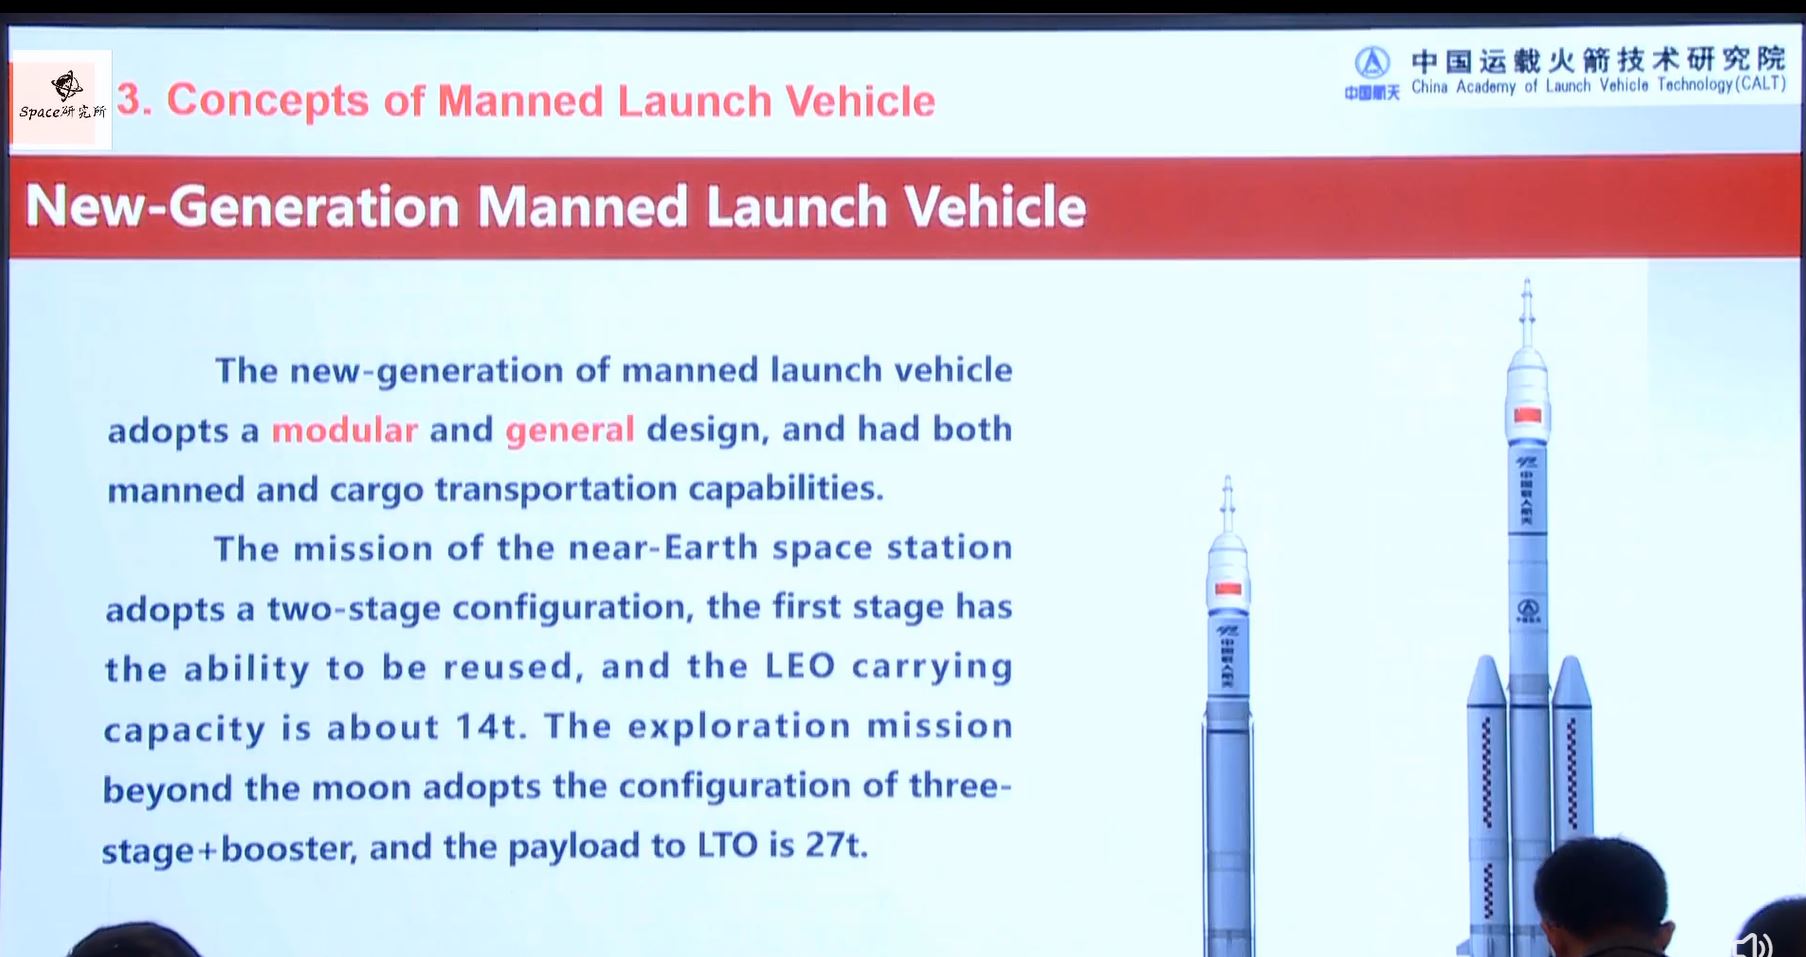 Ilustración de dos variantes del vehículo de lanzamiento tripulado de nueva generación de China.